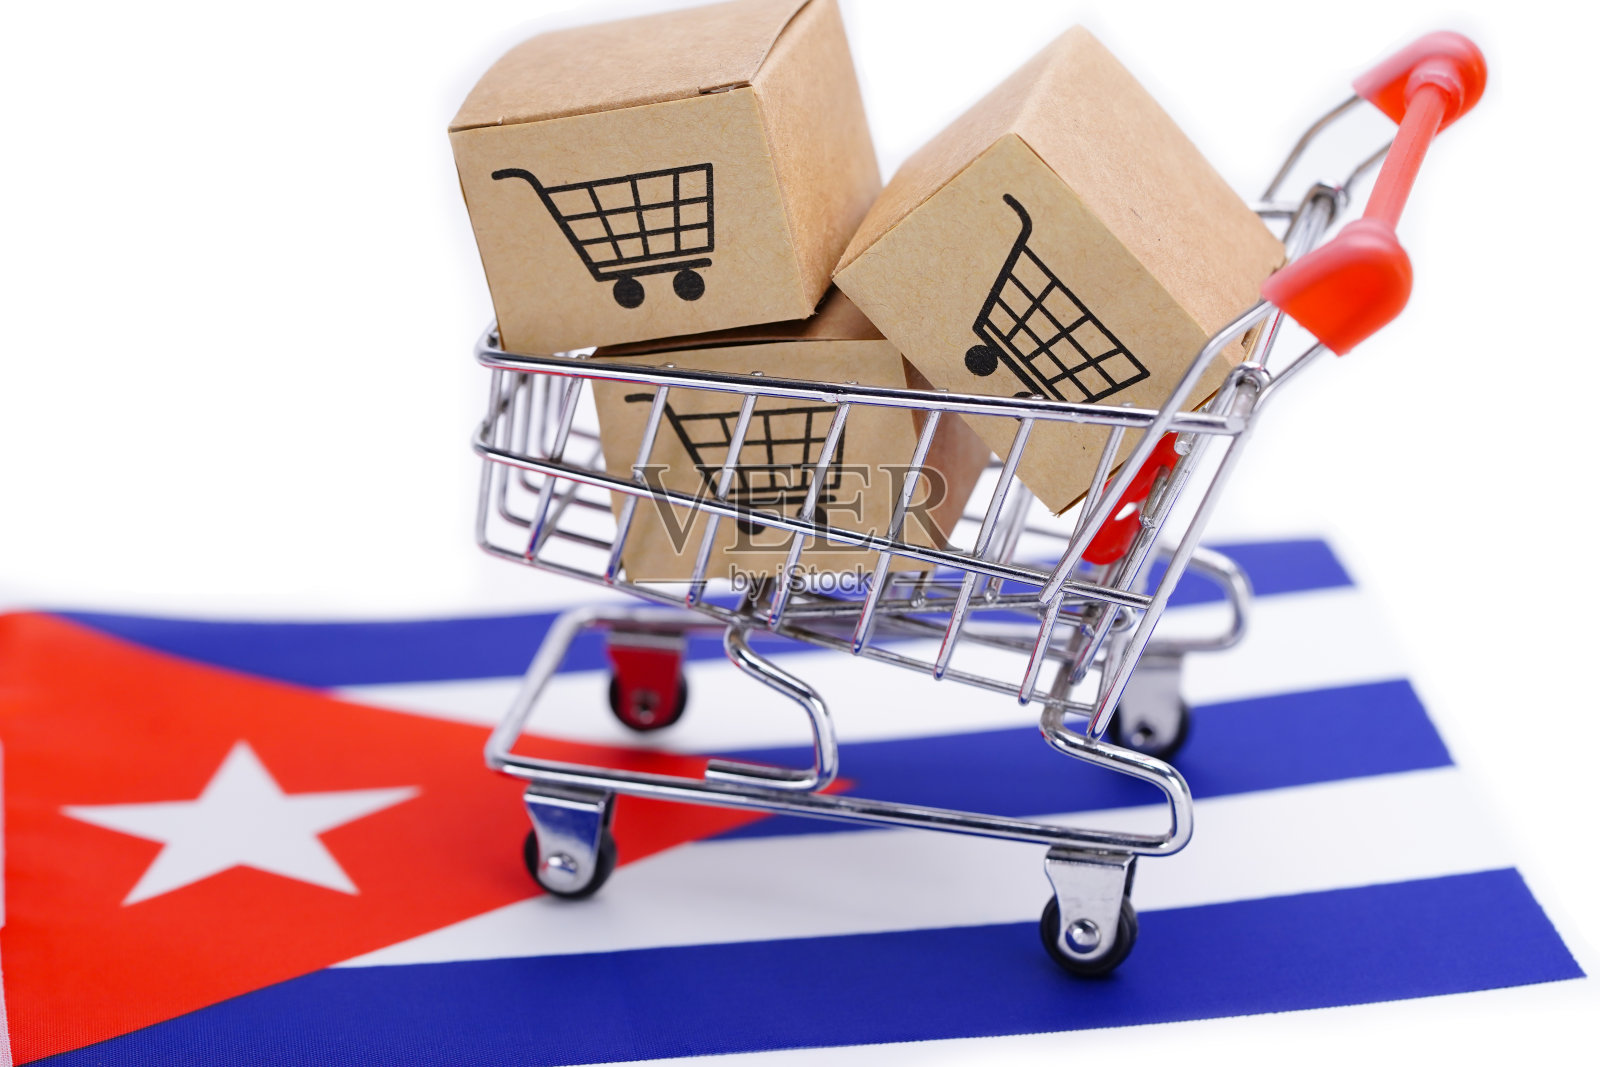 盒子与购物车标志和古巴国旗:进出口购物网上或电子商务金融配送服务商店产品运输,贸易,供应商的概念。照片摄影